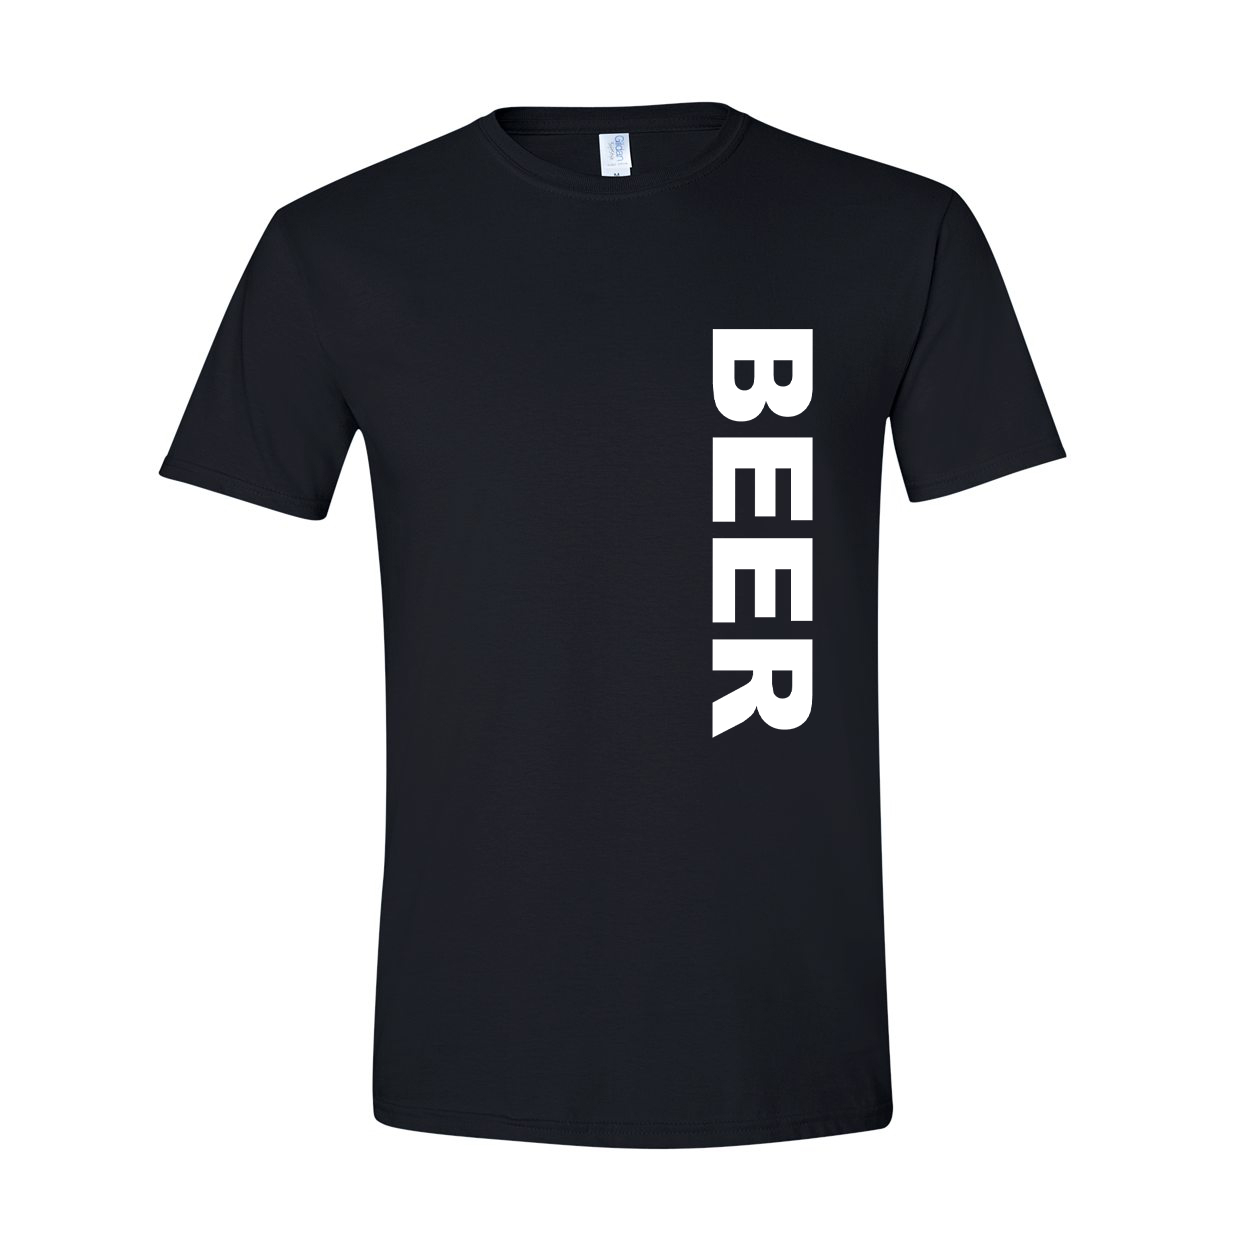 Beer Brand Logo Classic Vertical T-Shirt Black (White Logo)